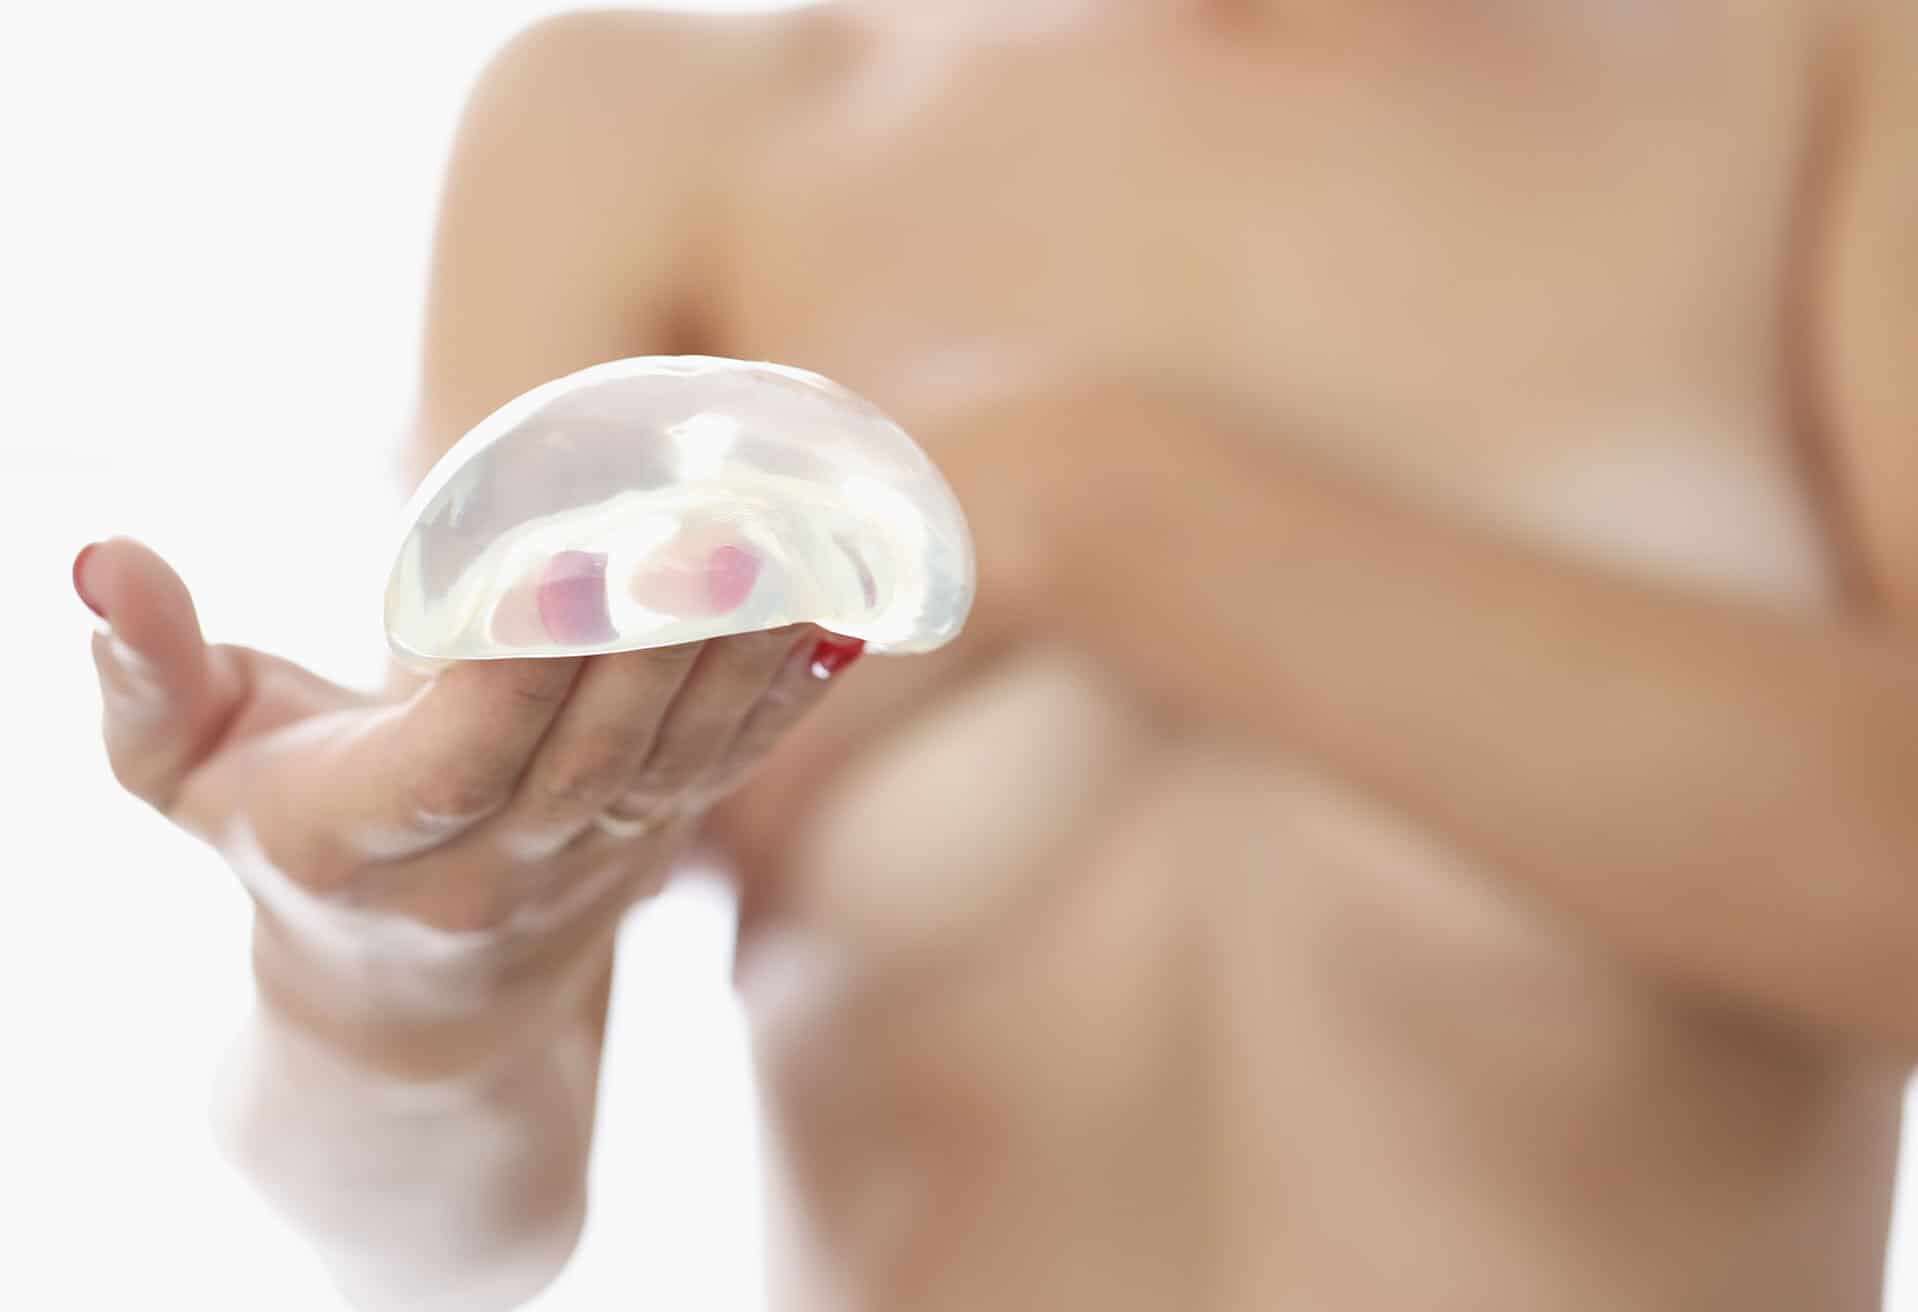 Amélioration de prothèses mammaires : intervention et consultation | Institut du Sein Paris